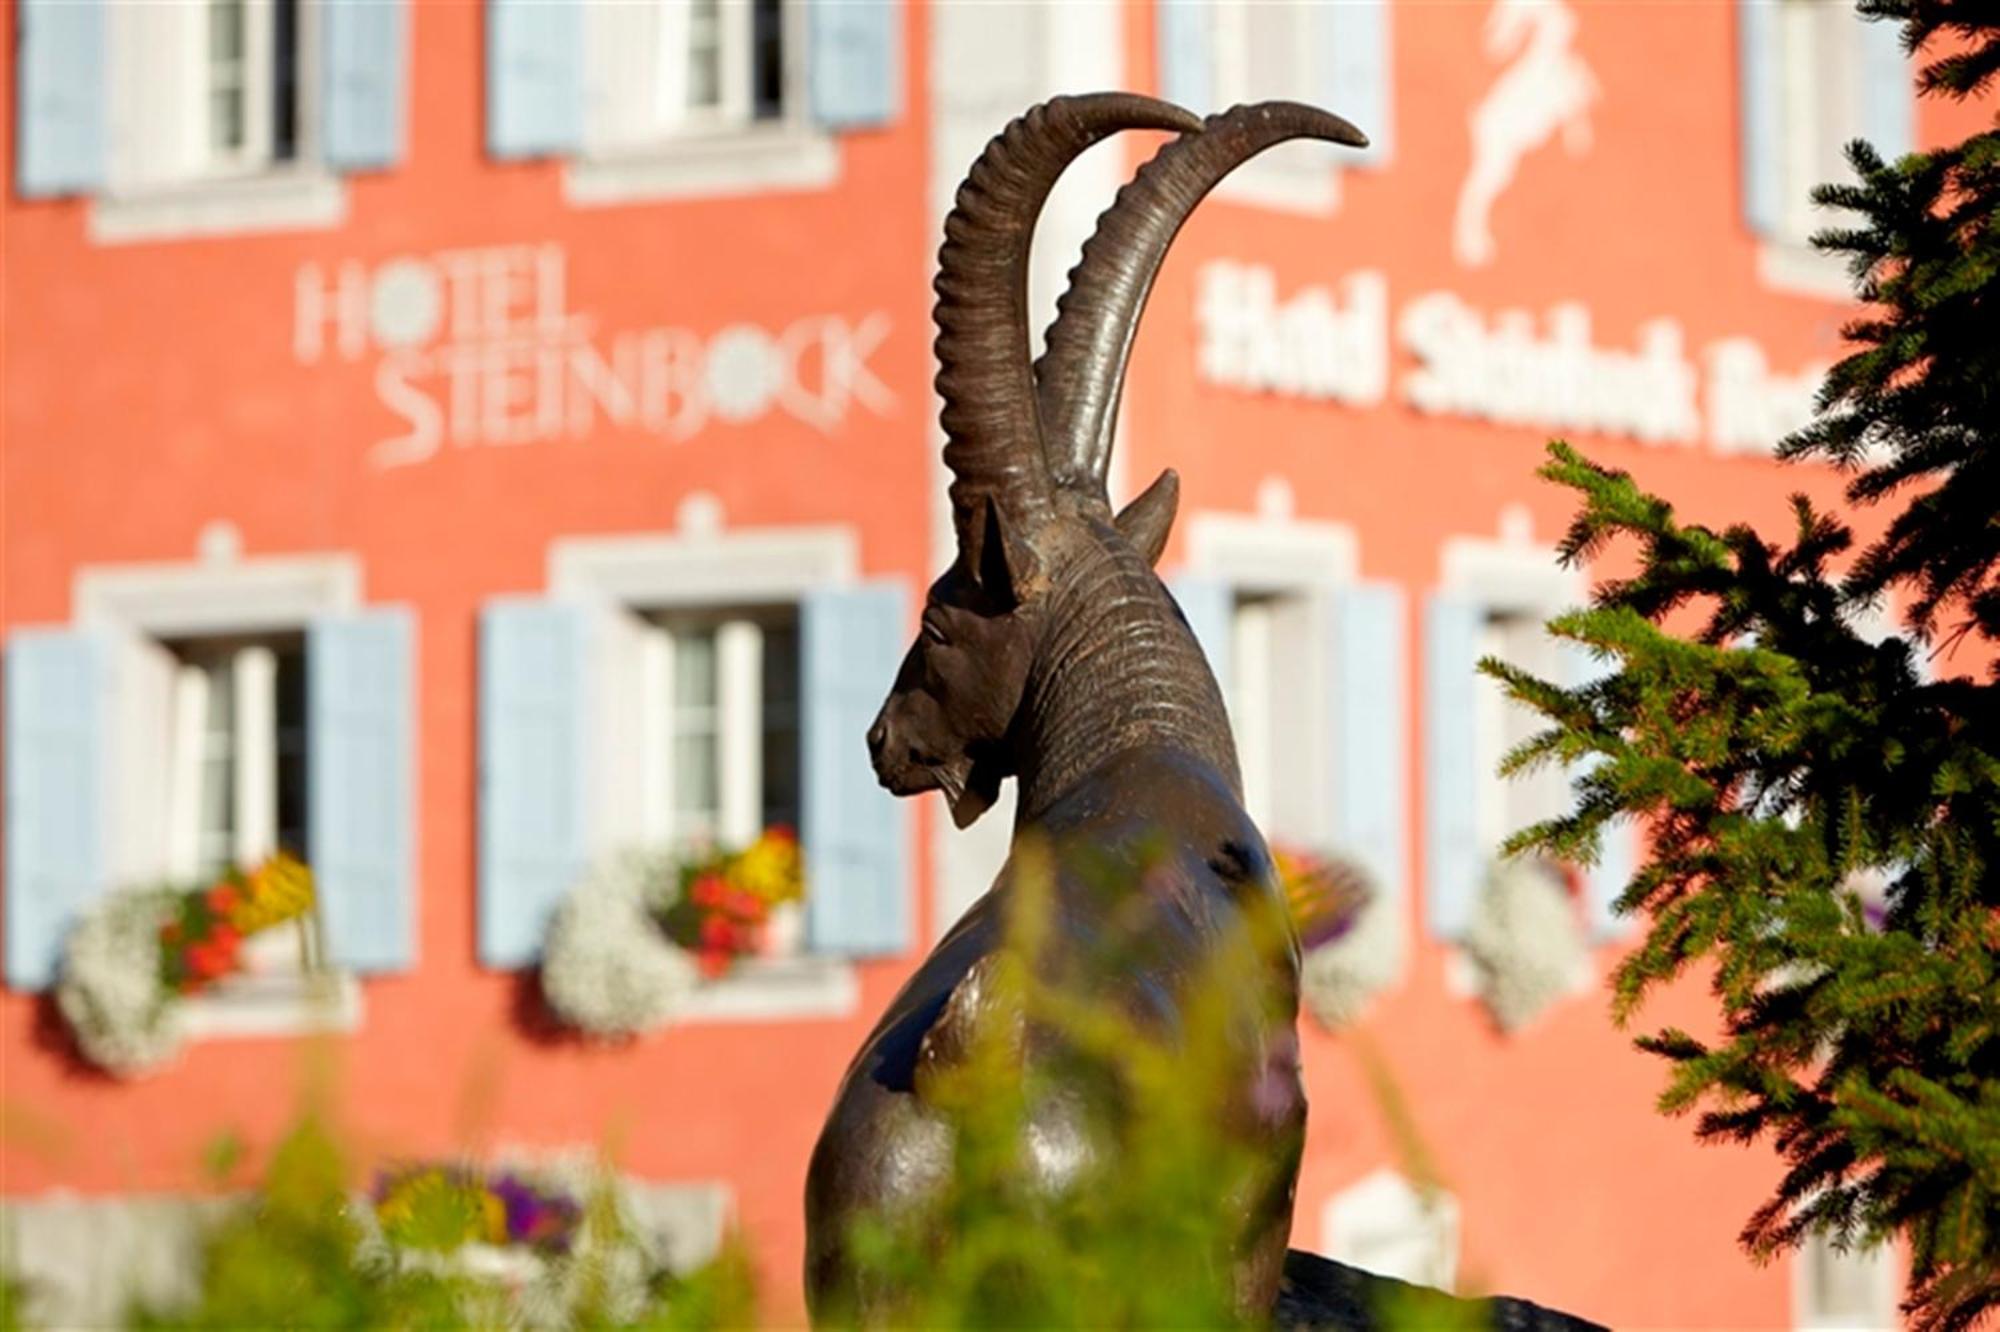 Hotel Steinbock ปอนเตรสซีนา ภายนอก รูปภาพ